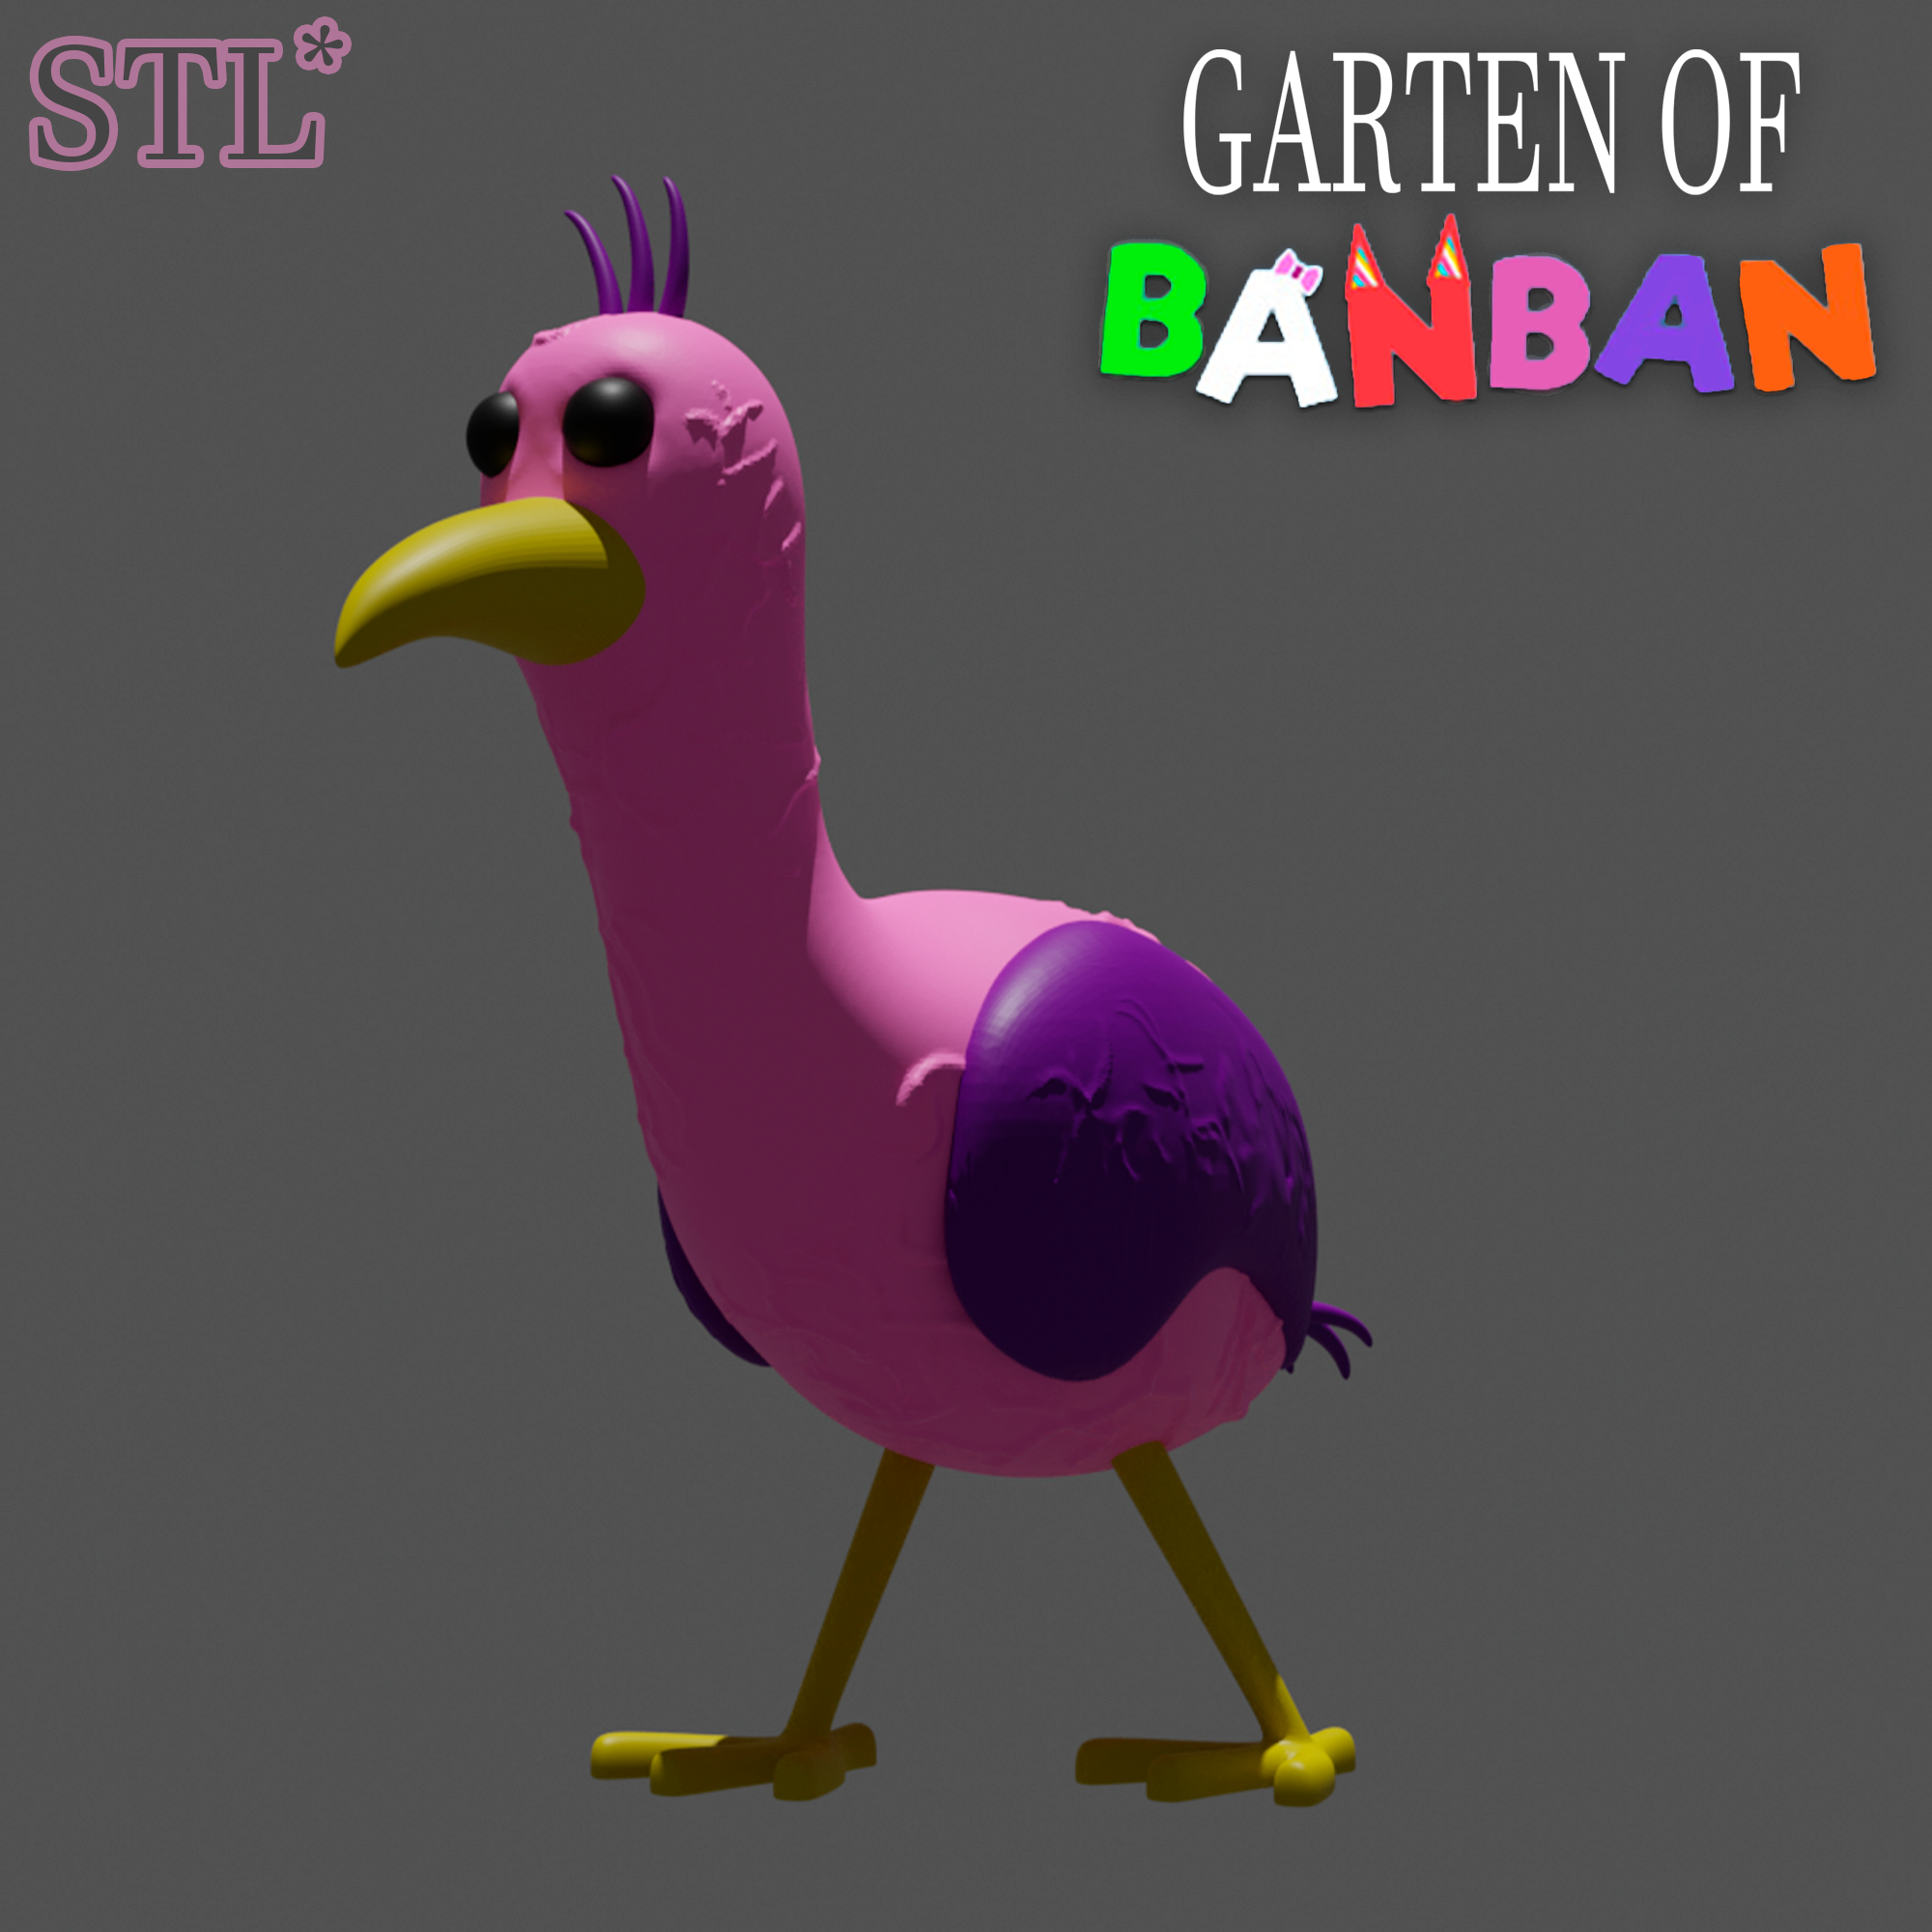 Opila Bird and her Baby Birds - Garten of Banban 2 